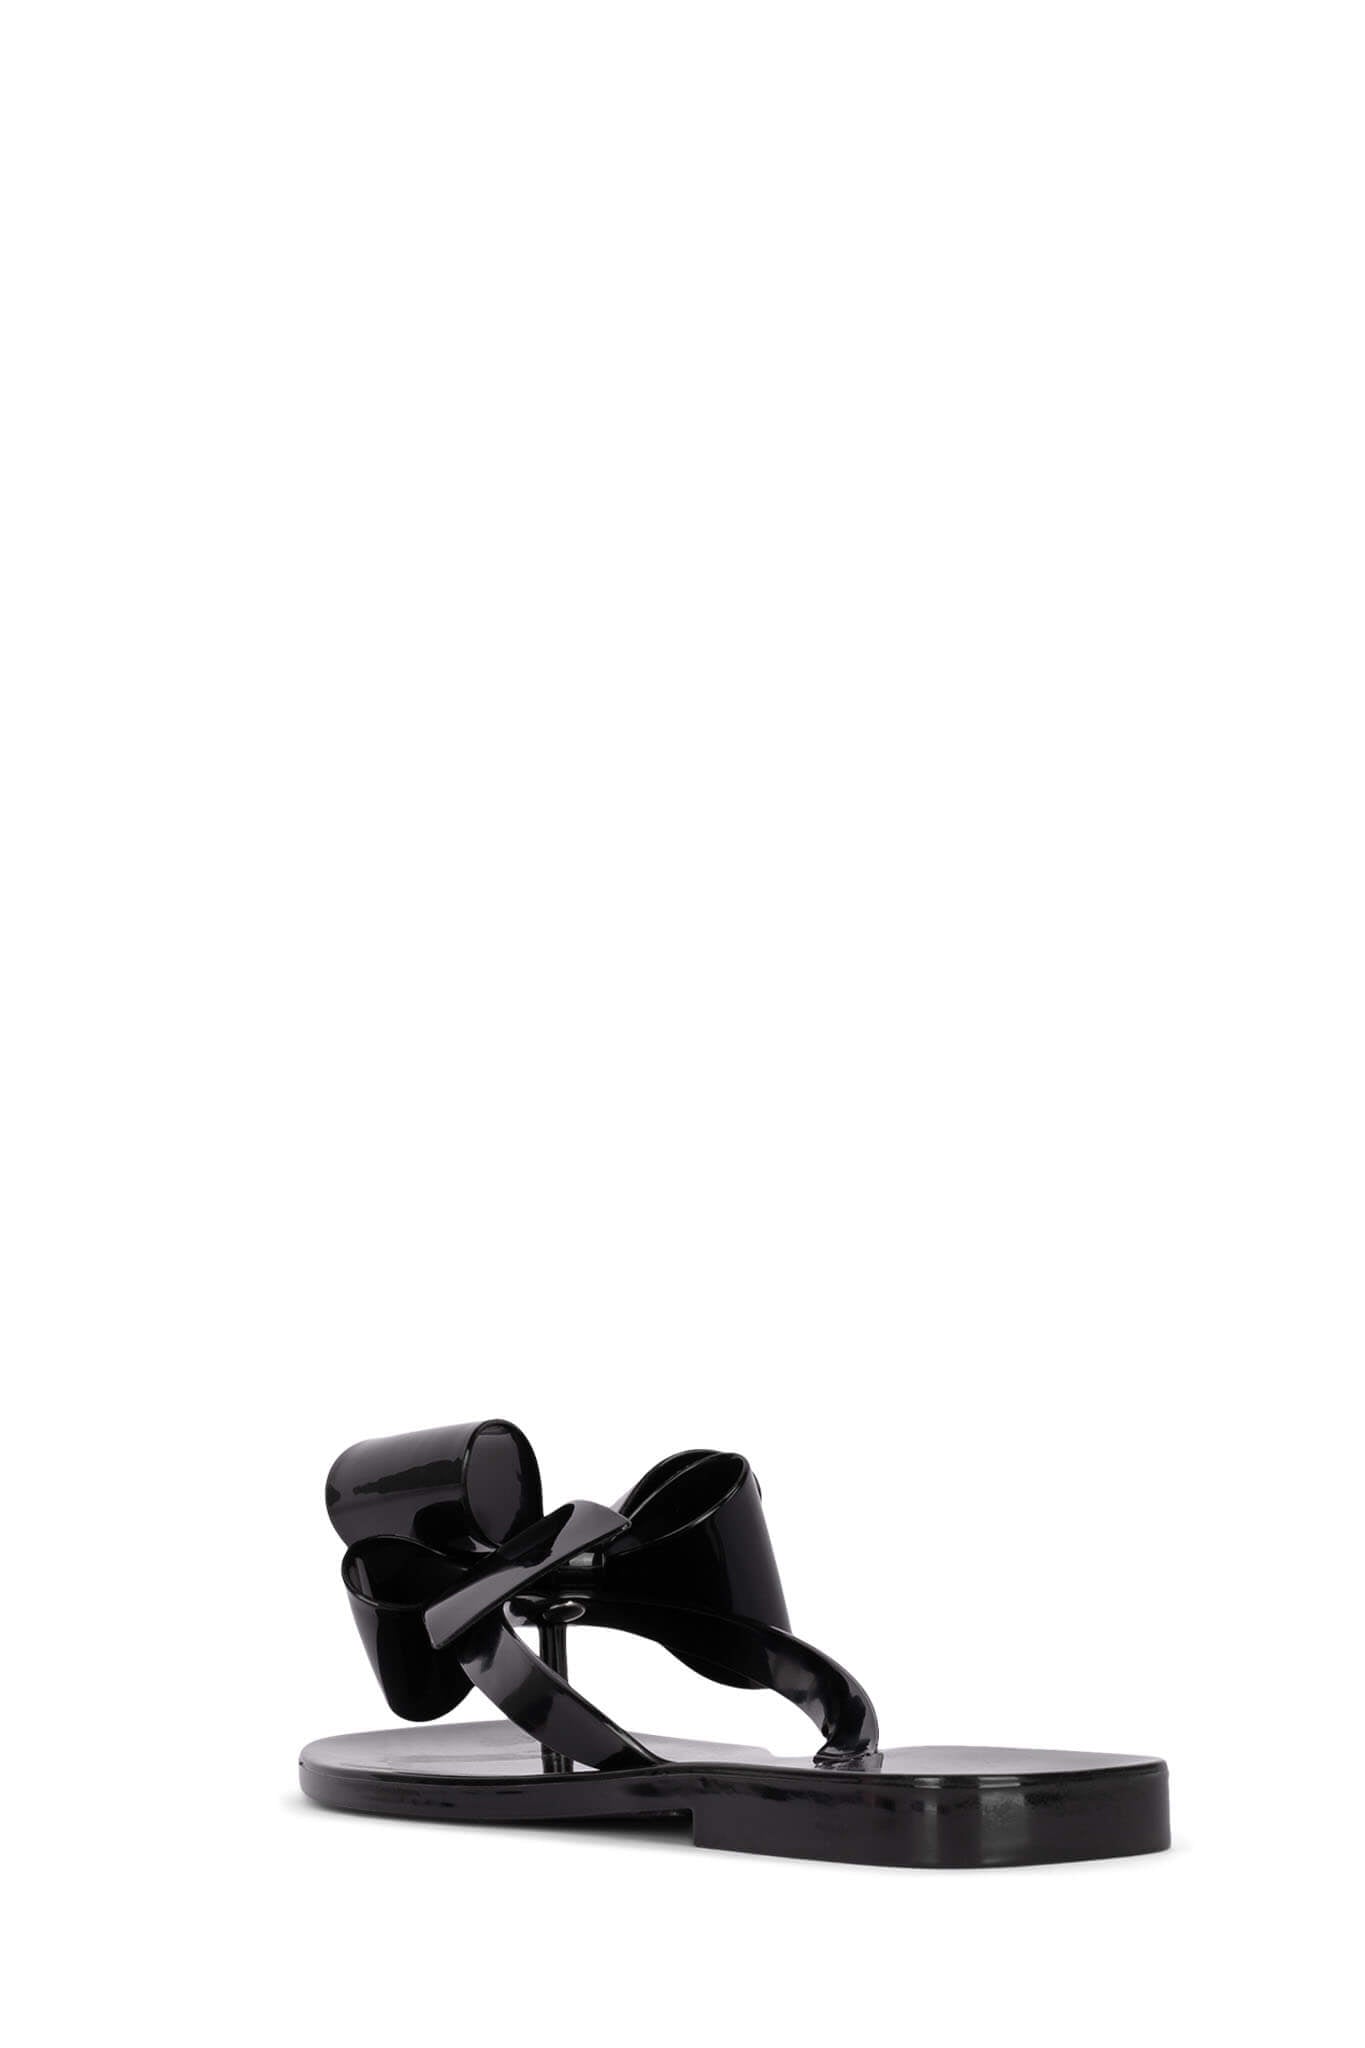 Salvatore Ferragamo Black Jelly Favilia Bow Ankle Strap Sandals Size 39.5  Salvatore Ferragamo | TLC